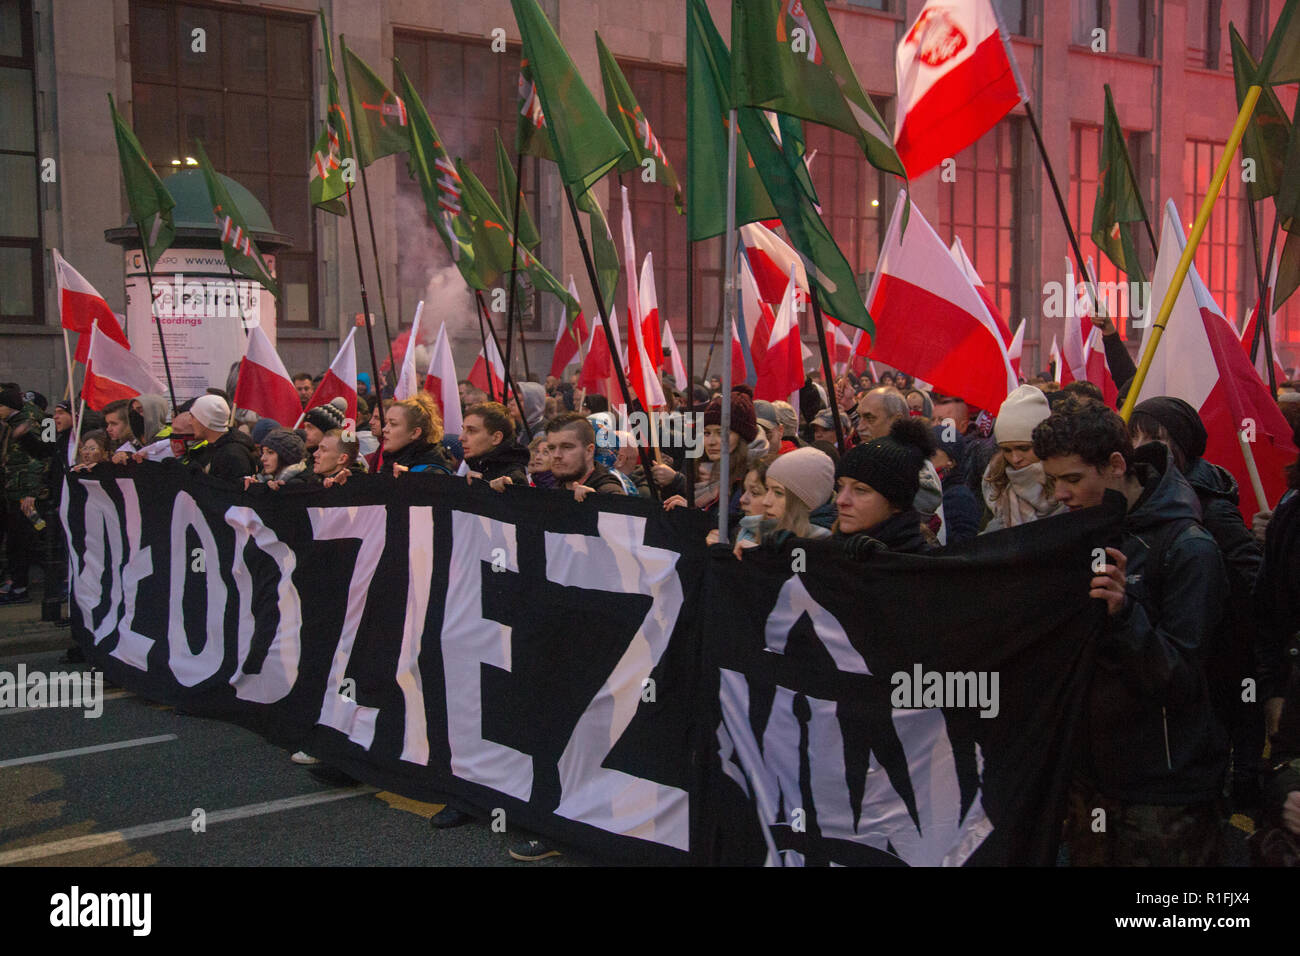 Varsavia, Polonia, 11 Novembre 2018: Celebrazioni del polacco del Giorno di indipendenza in una massa marzo che ha raccolto più di 200 mila persone. All-Polish Gioventù (Młodzież Wszechpolska) Foto Stock